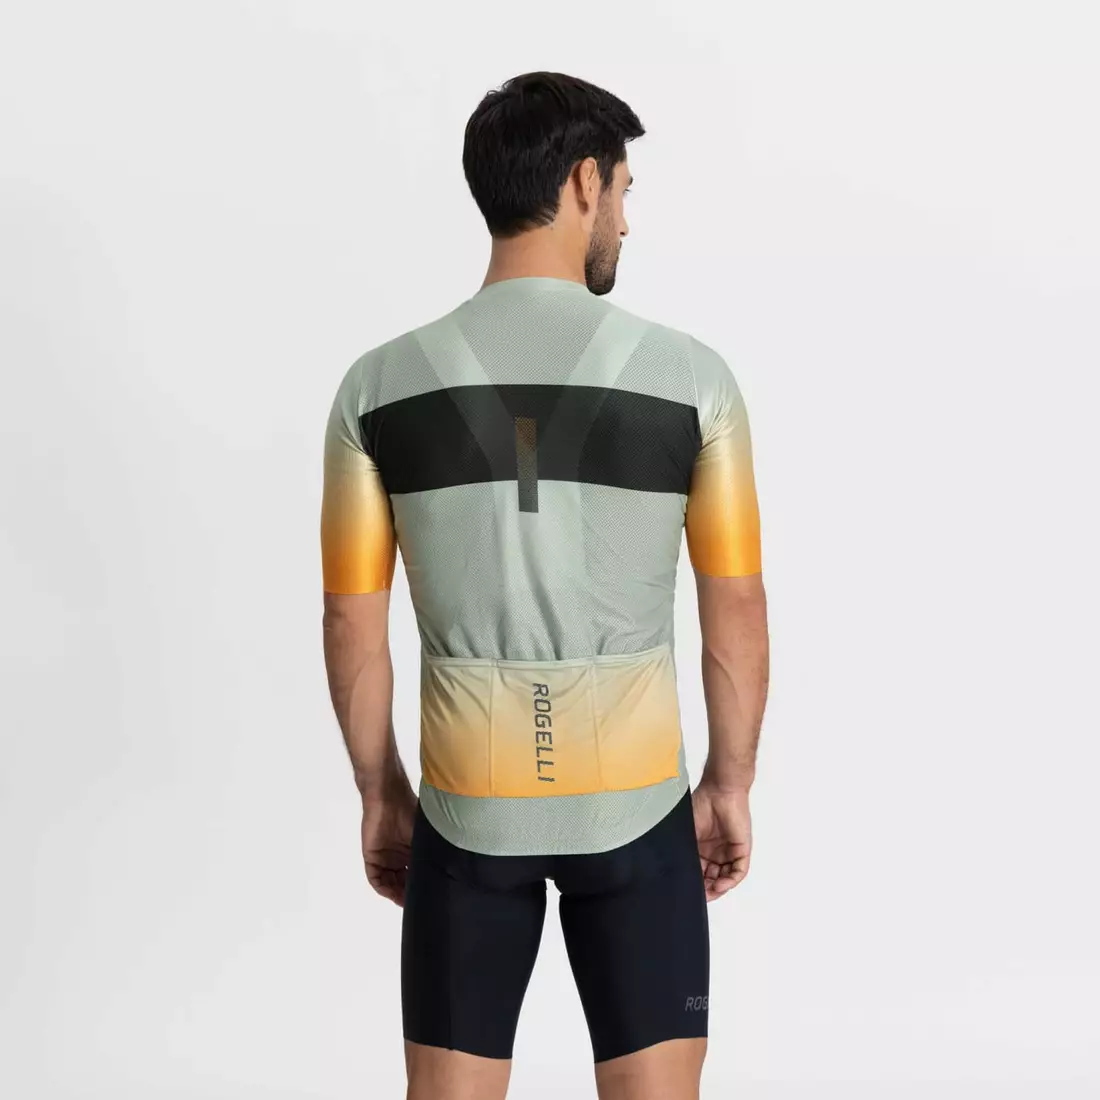 Rogelli DAWN męska koszulka rowerowa, szaro-pomarańczowa